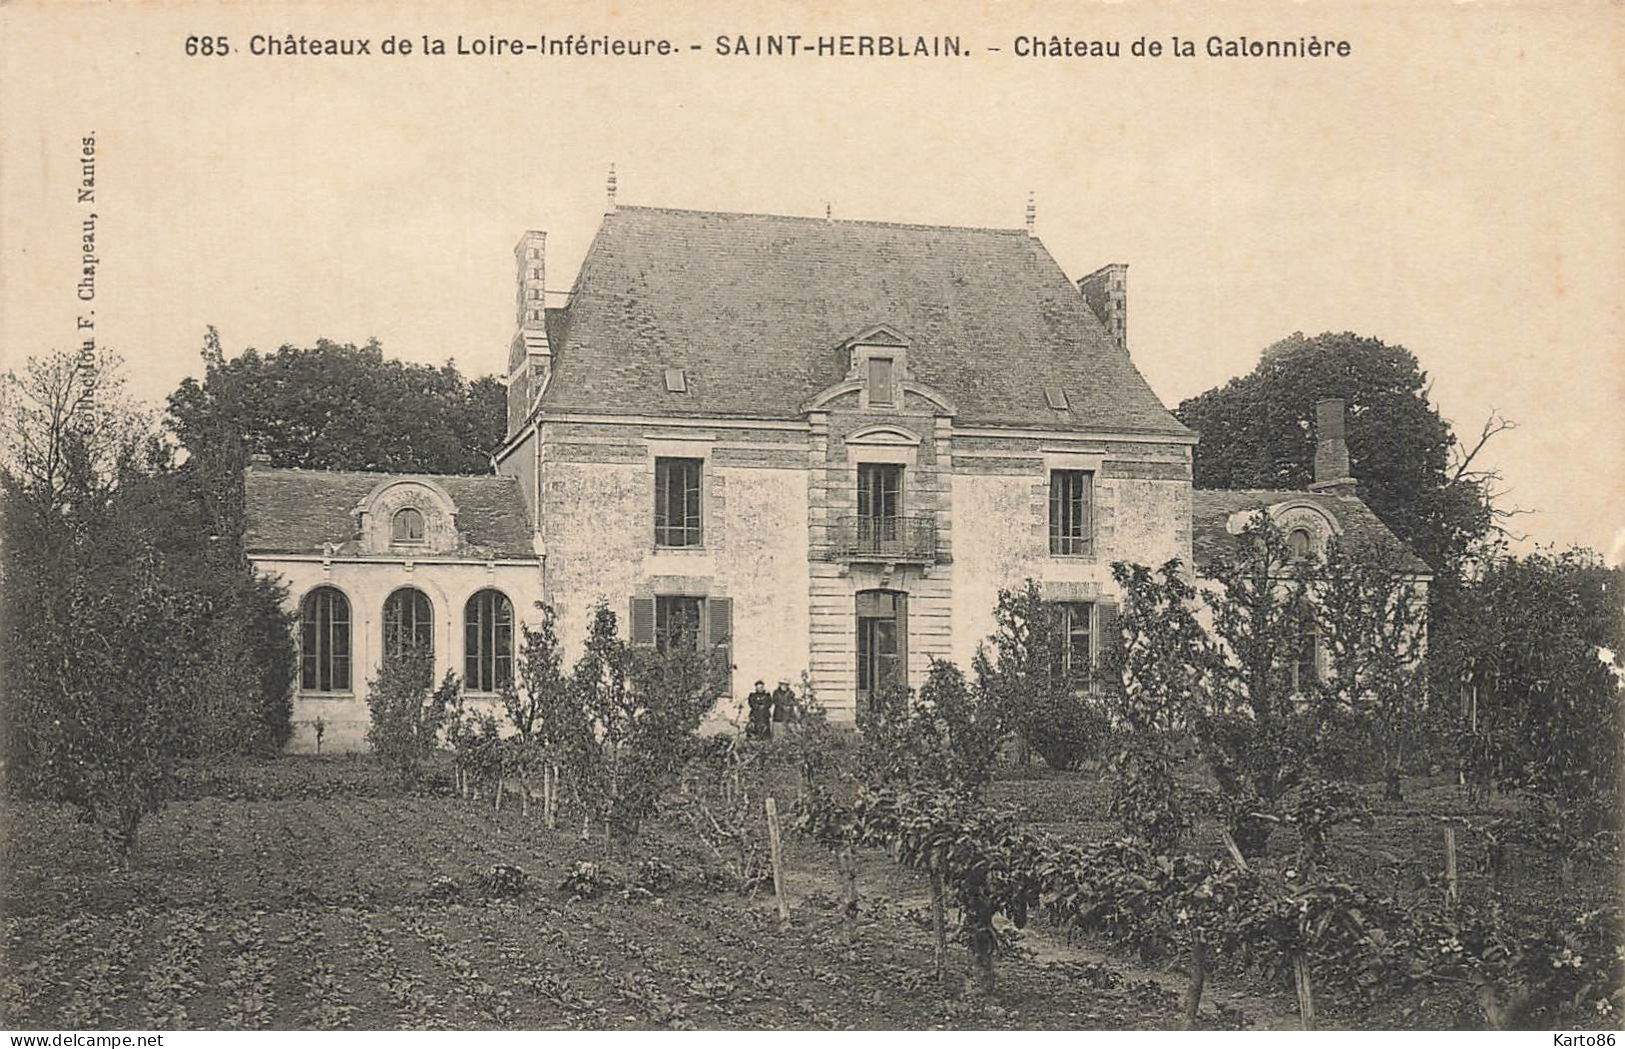 St Herblain * Château De La Galonnière * Château De La Loire Inférieure N°685 - Saint Herblain